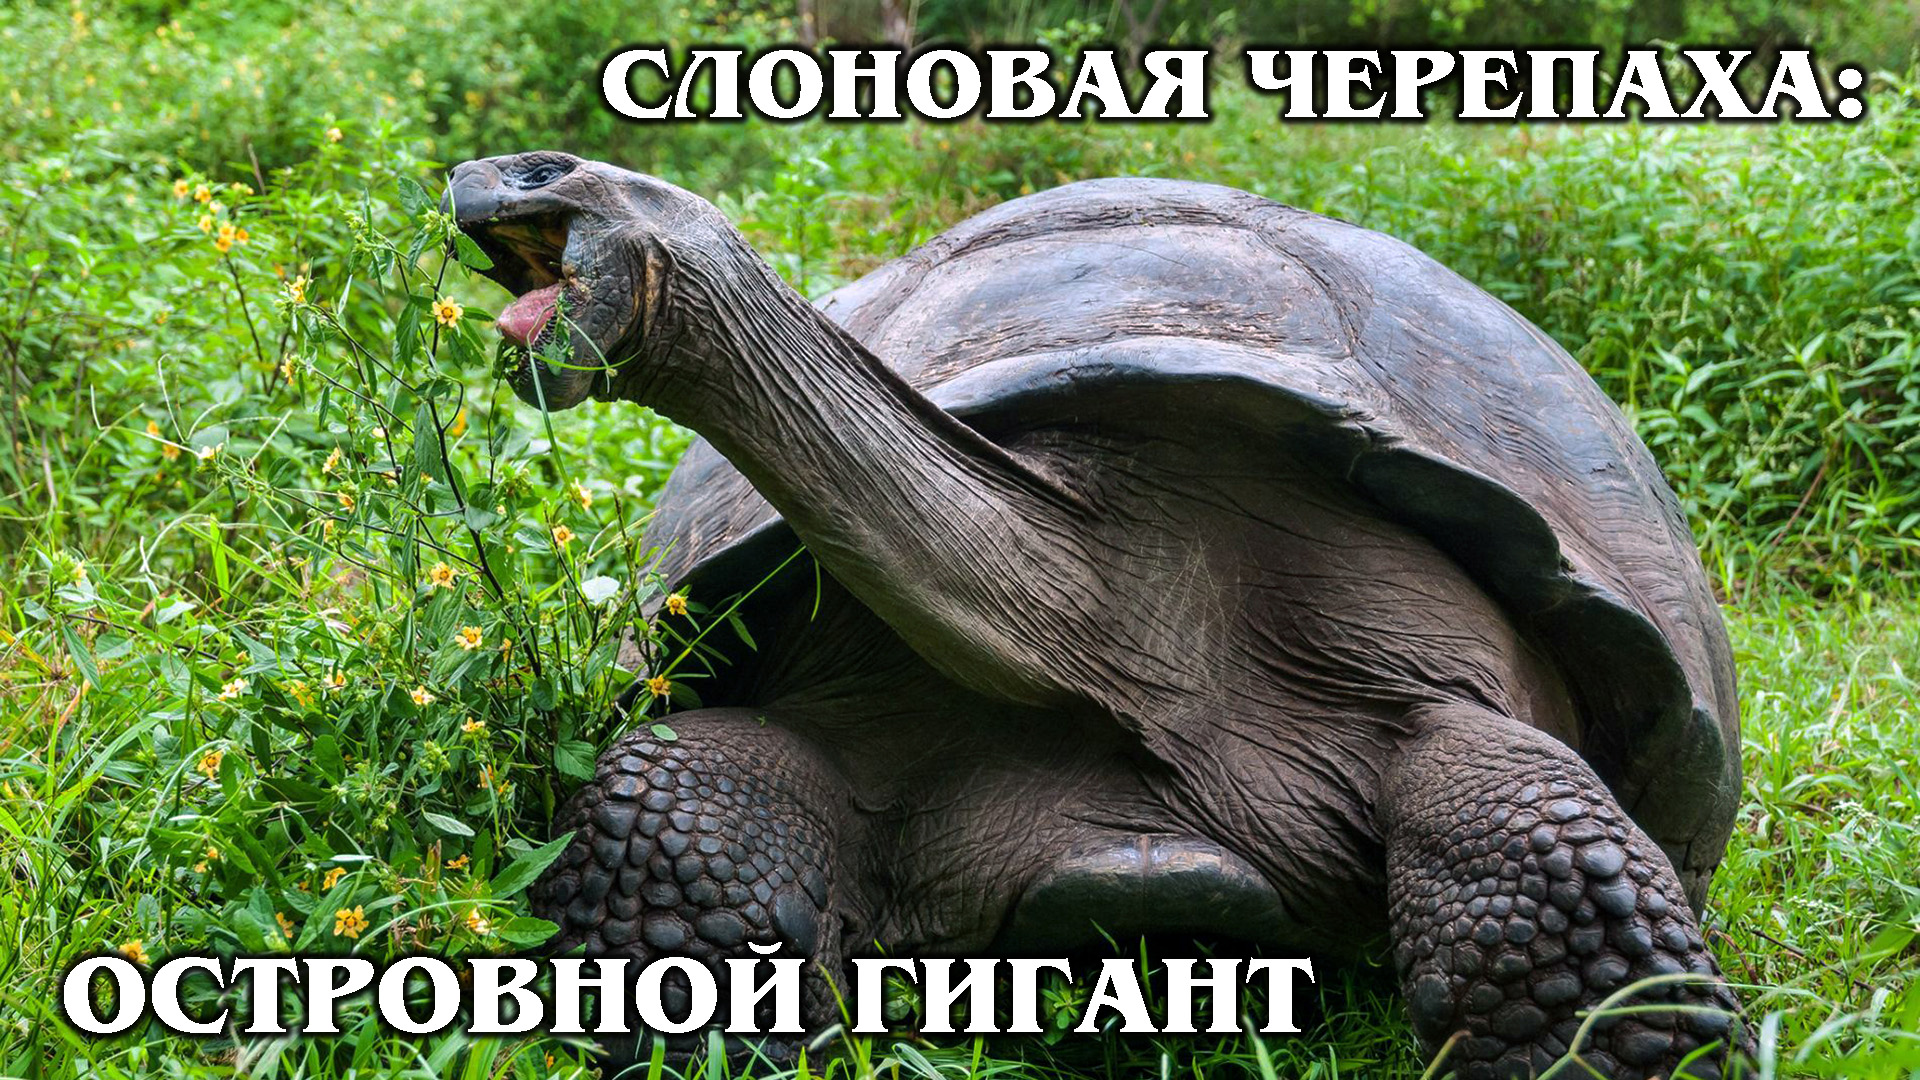 ГАЛАПАГОССКАЯ ЧЕРЕПАХА: Слоновая черепаха живет 200 лет! Интересные факты про черепах и животных